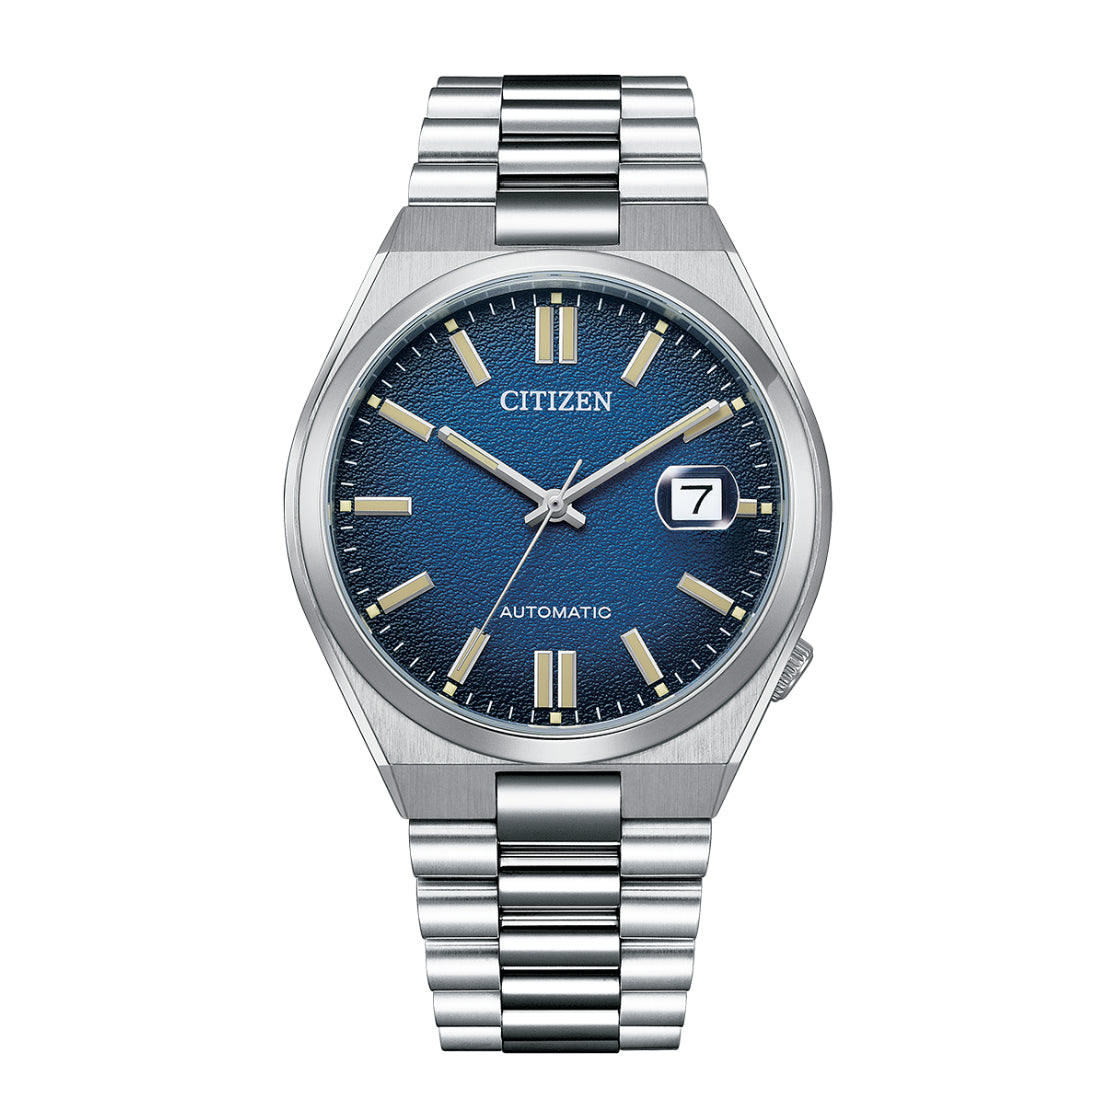 Citizen Men's Watch, Automatic Movement, Blue Dial - CITC-0037